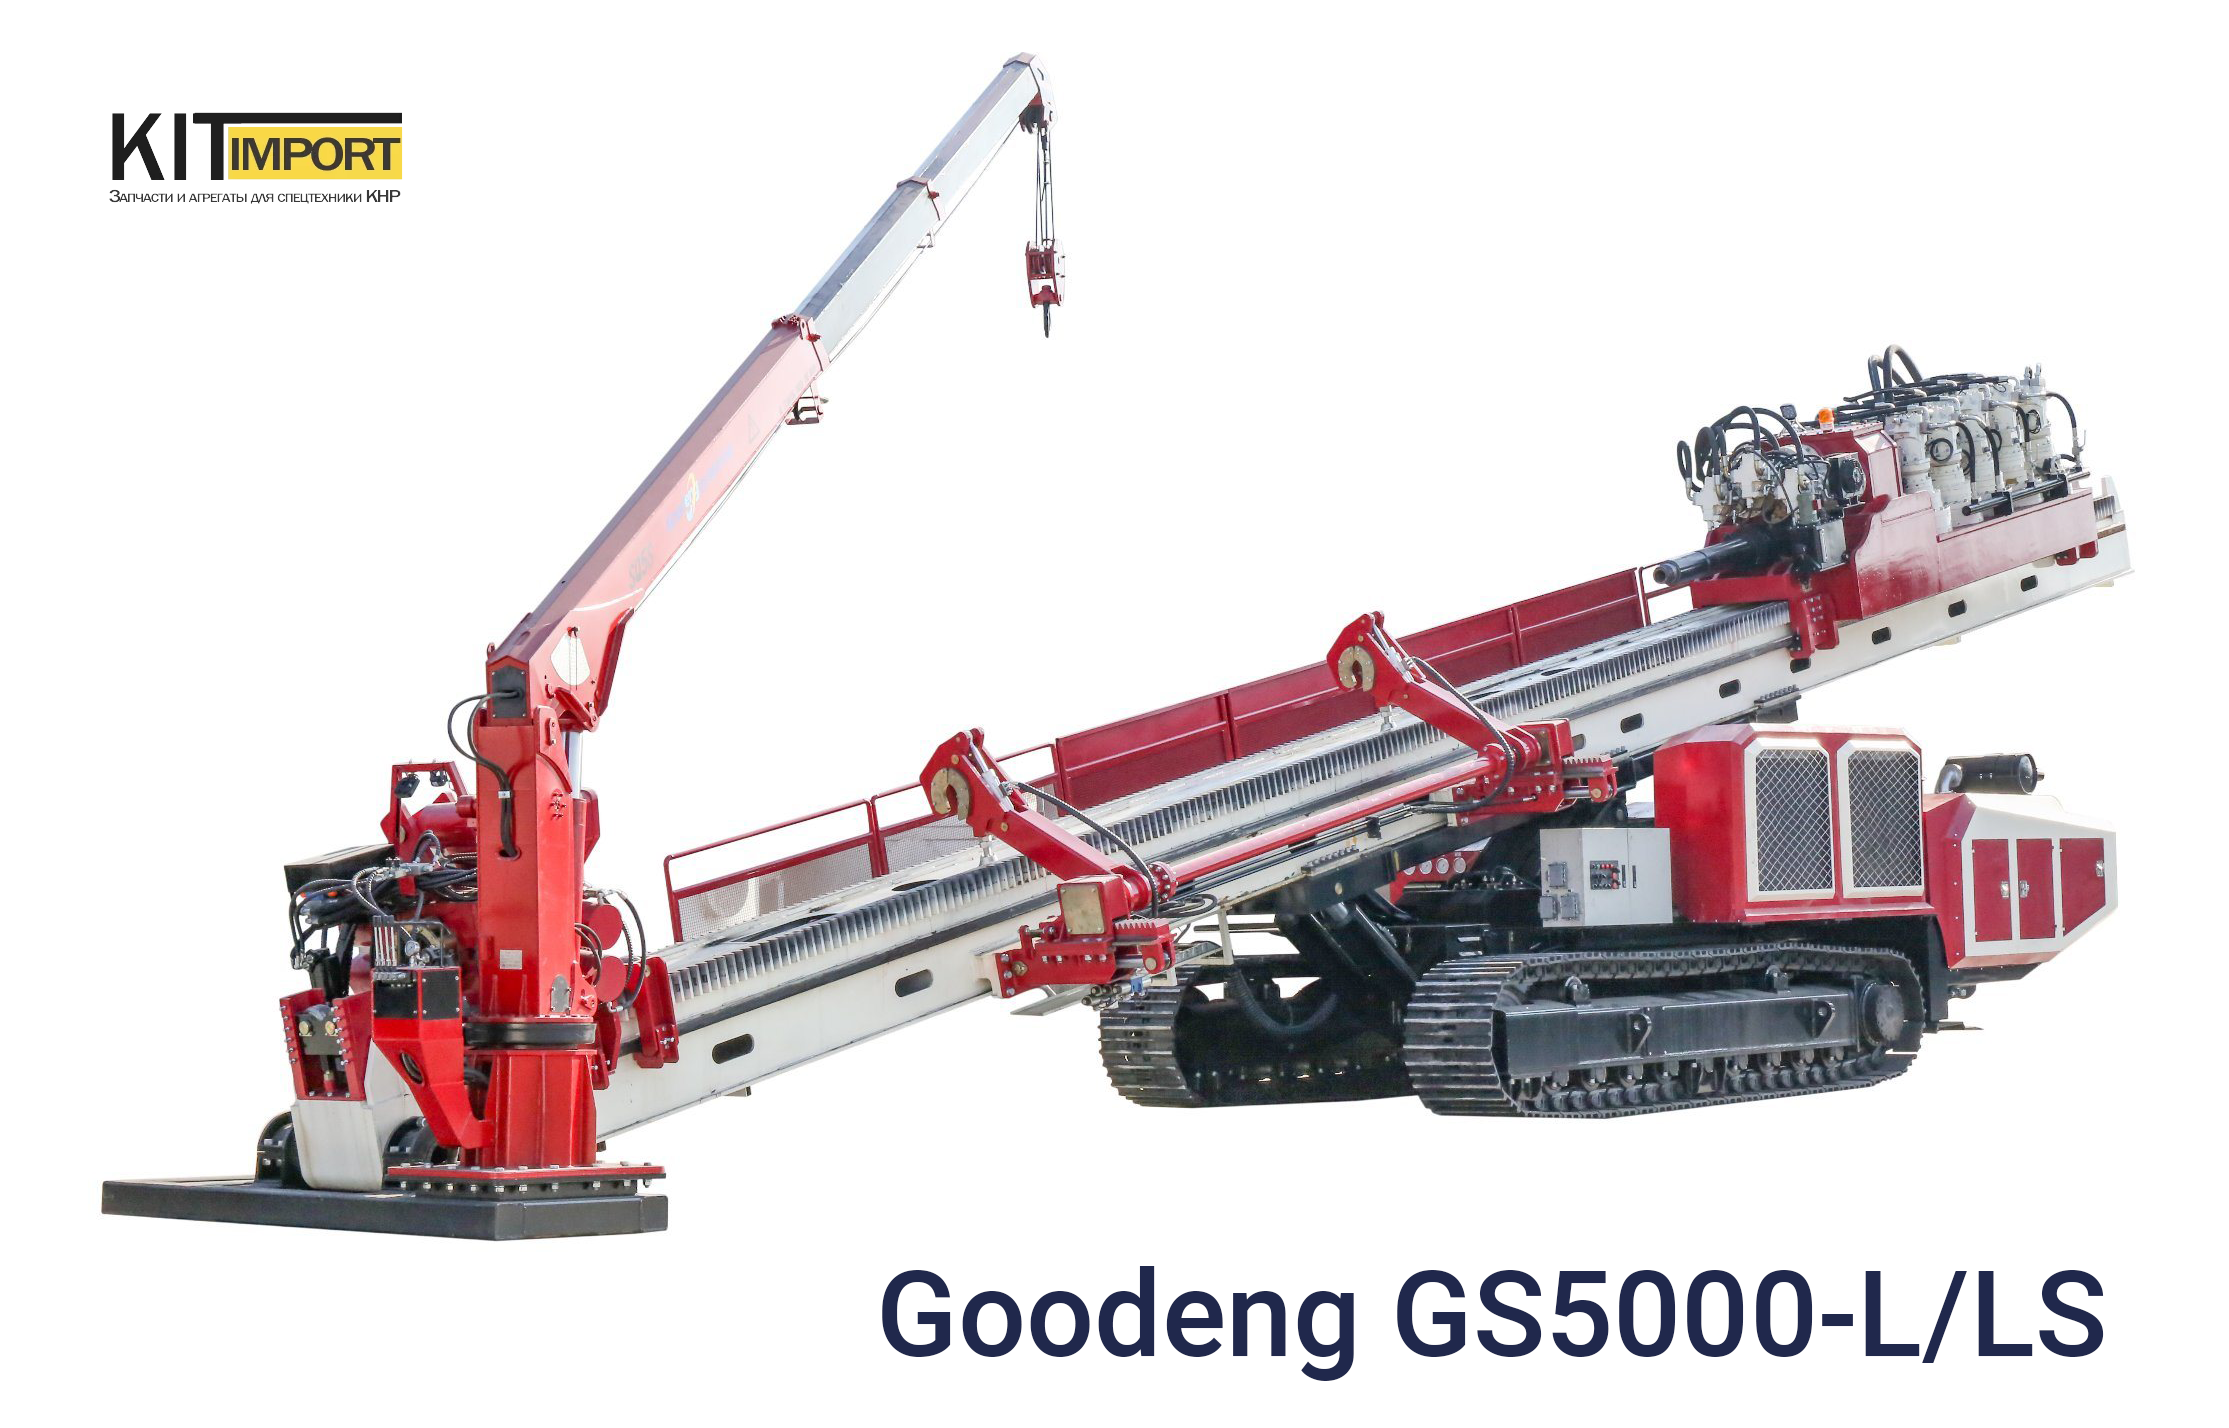 GS5000-L